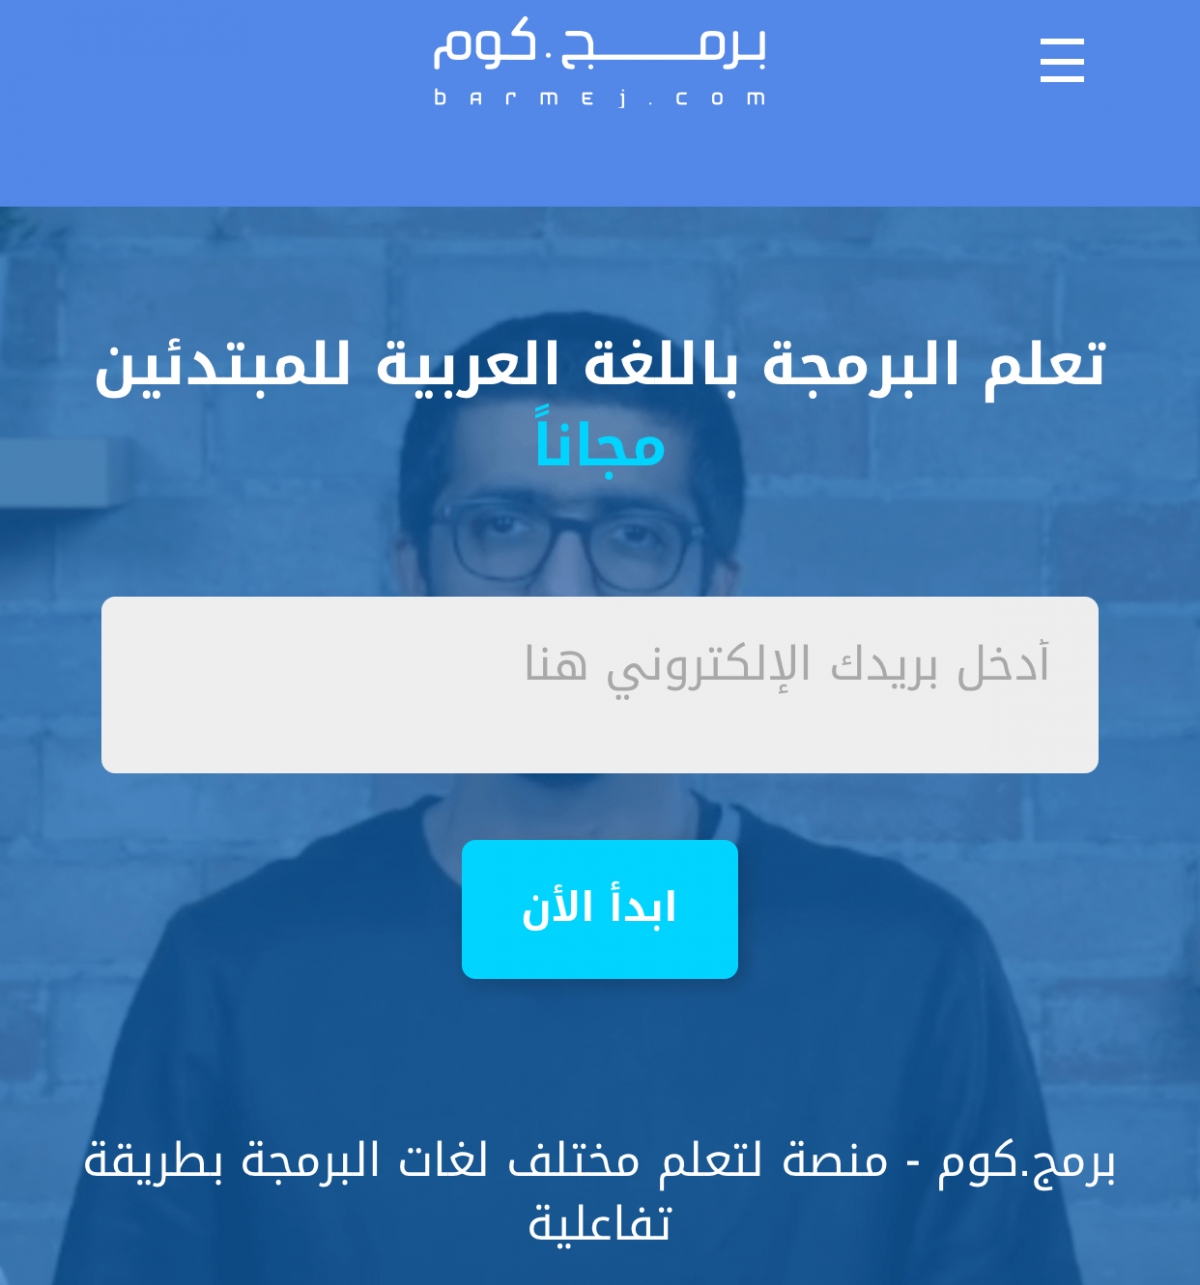 موقع عربي مفيد يحتوي على دورات تدريبية للغات البرمجة